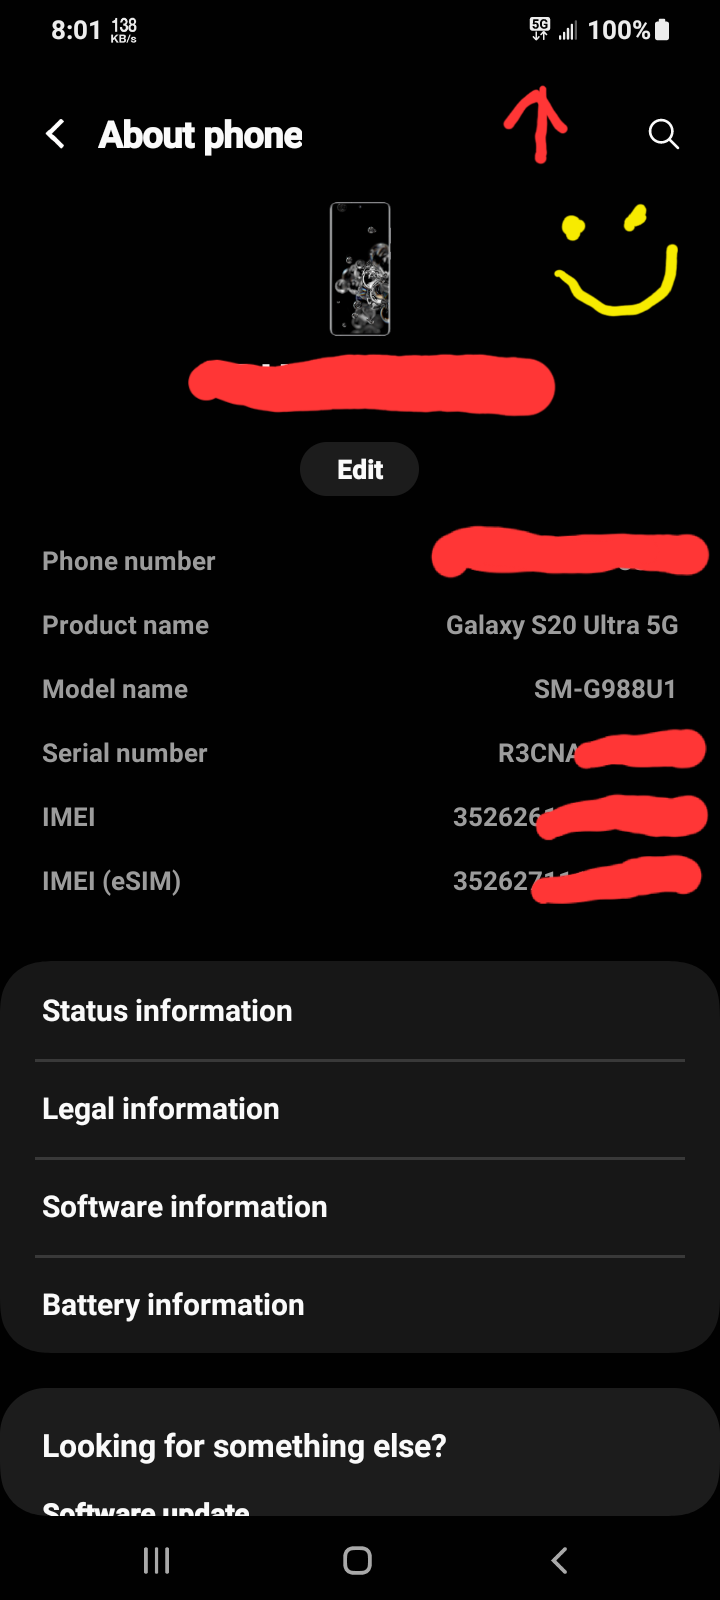 Samsung Galaxy S20 G988 Ultra 5G 128 Go Dual Sim Gris